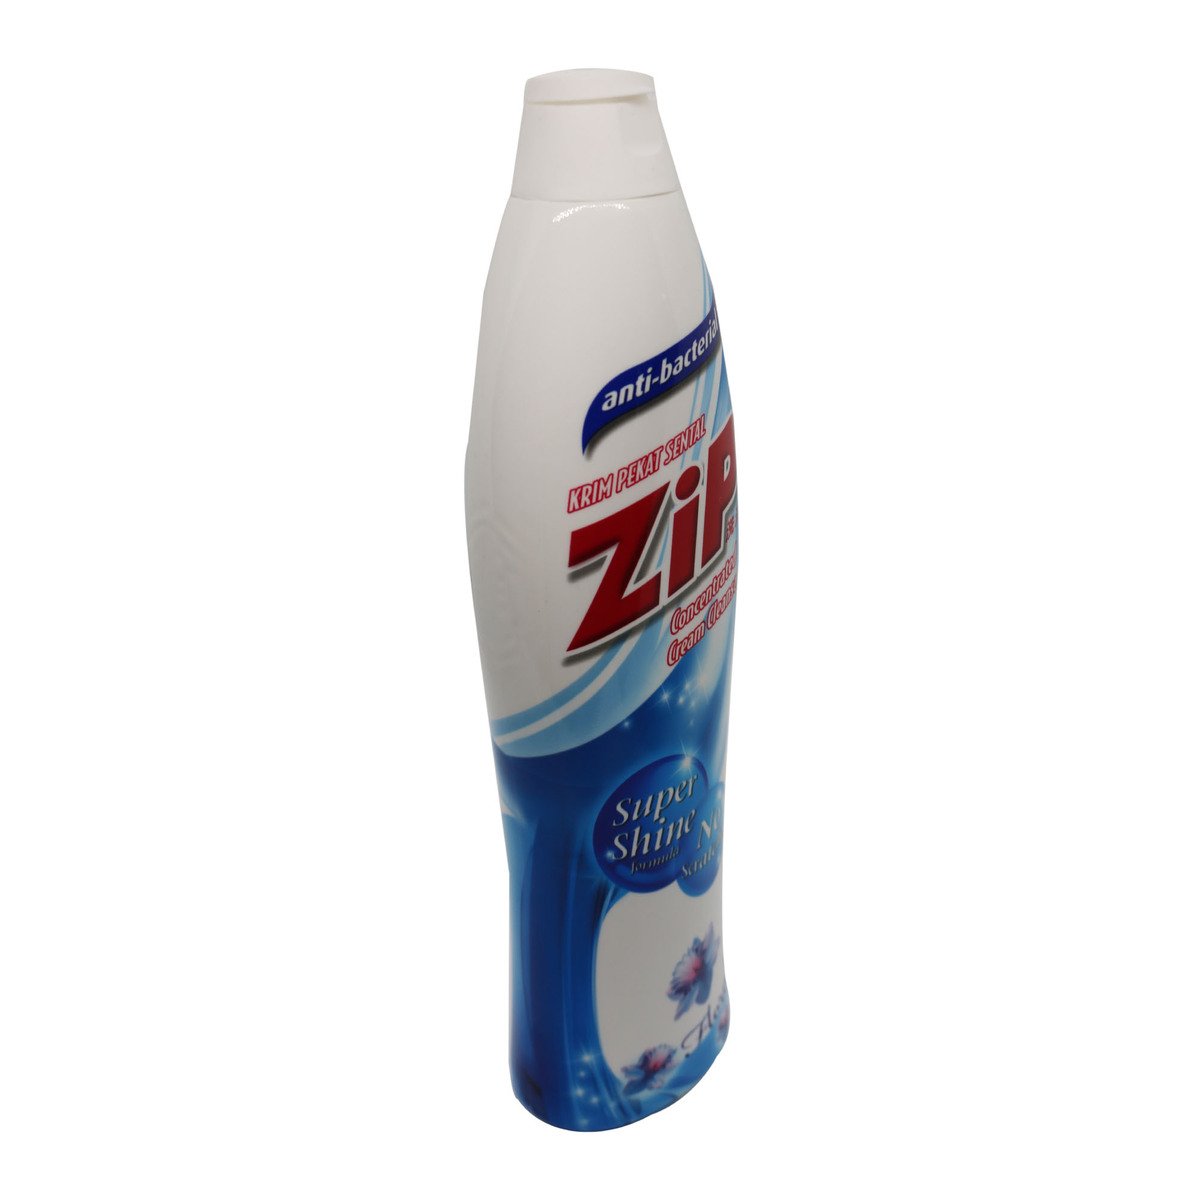 Zip Cream Cleanser Floral 500ml